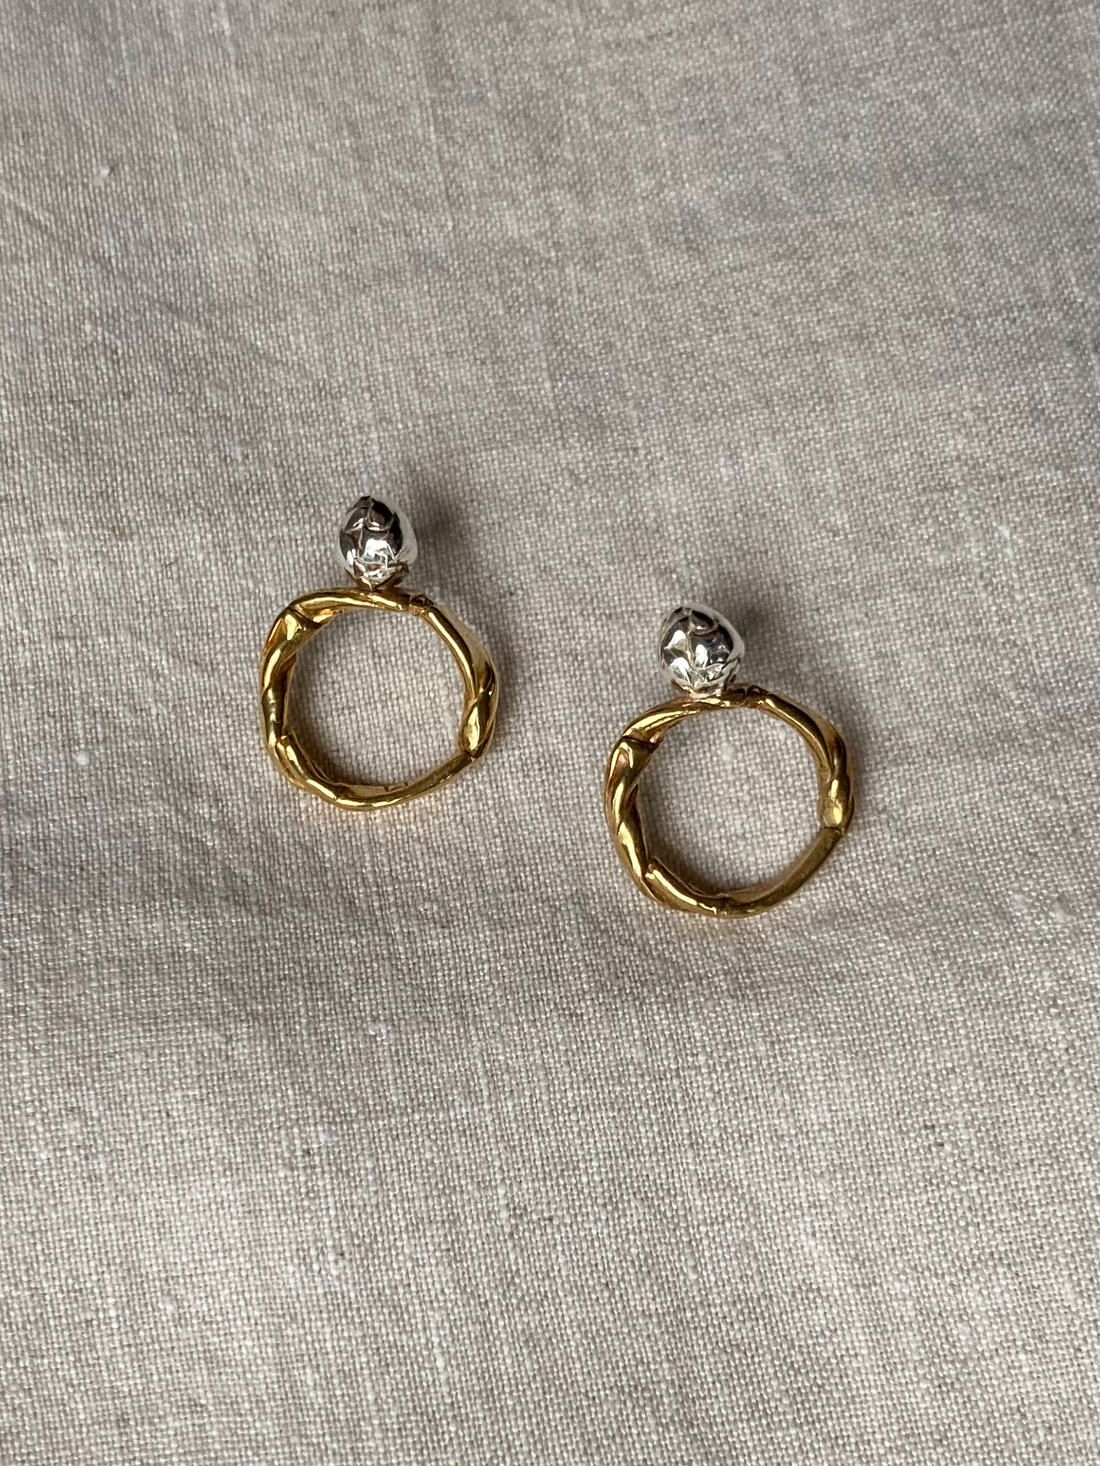 Yann silver and brass earrings